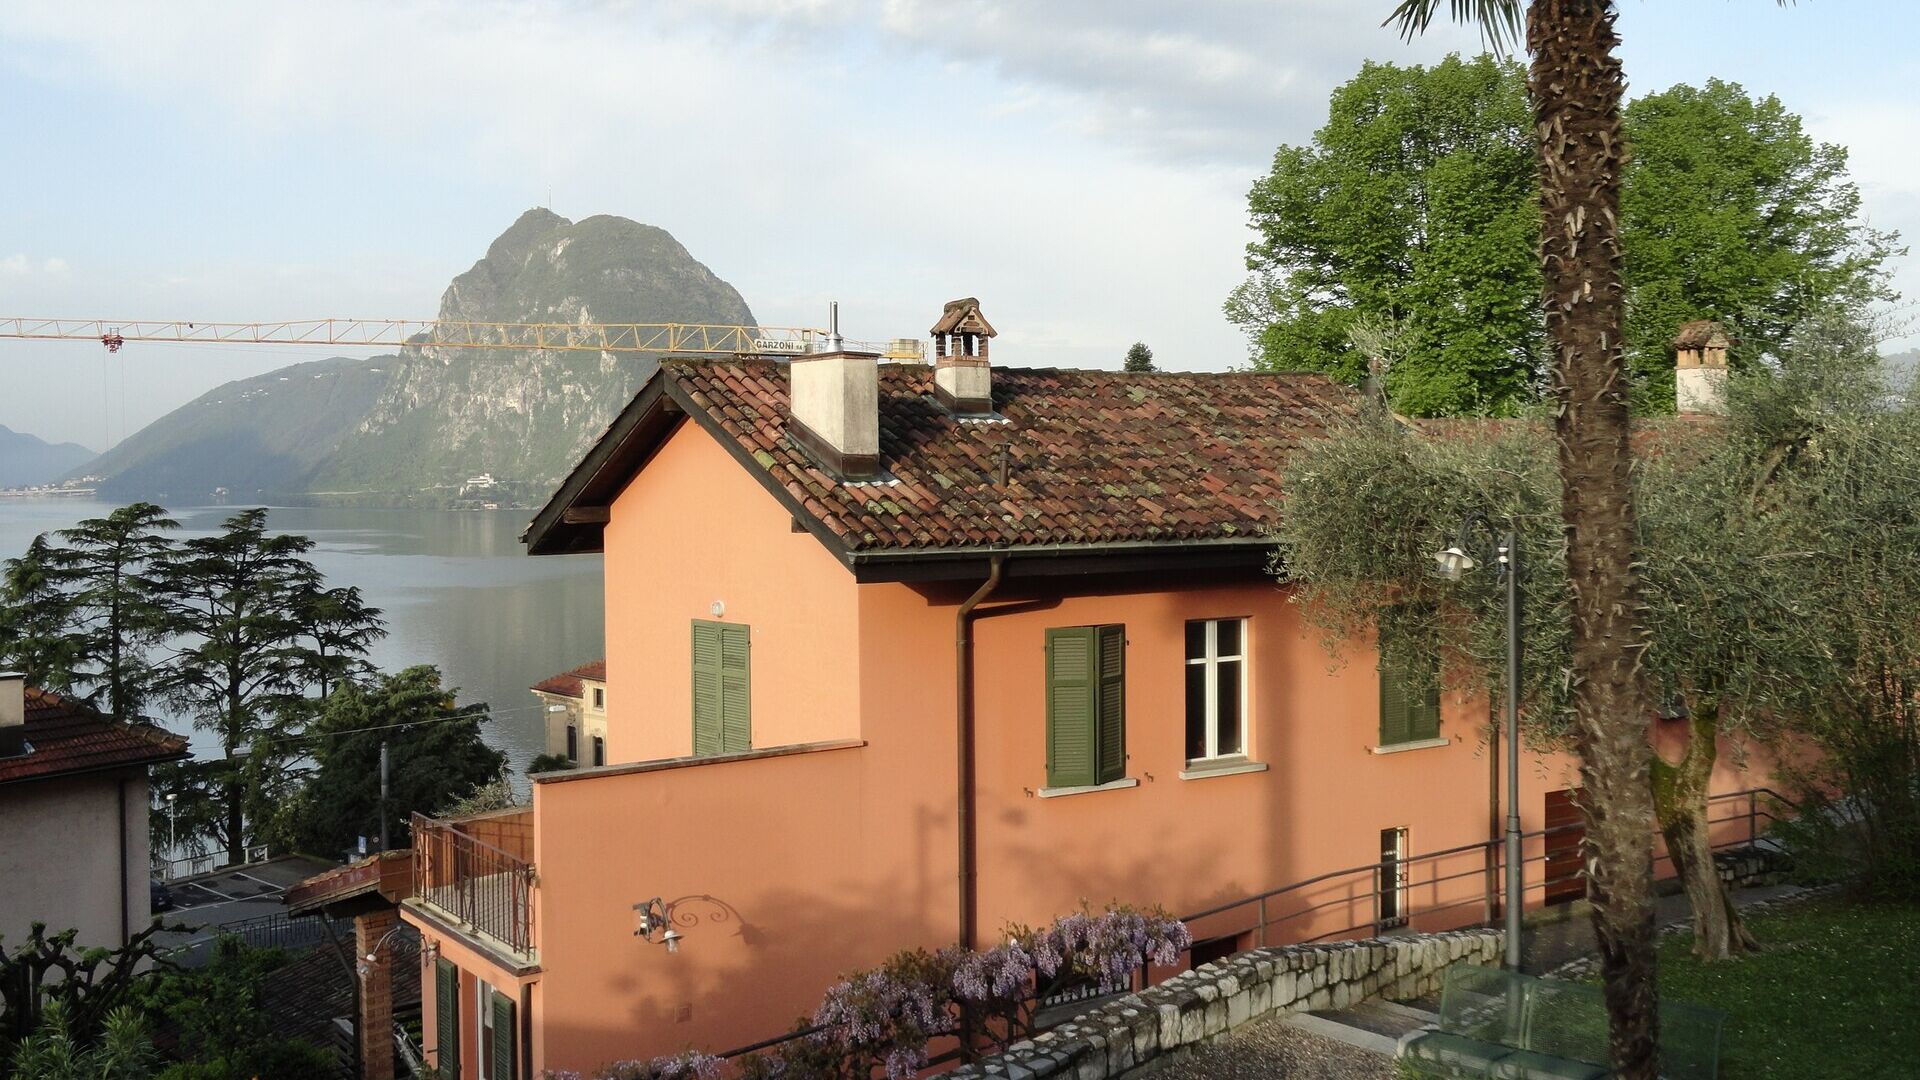 Ilmu manusia dan alam: Casa Carla Cattaneo di Castagnola, di wilayah Kotamadya Lugano, di Canton Ticino: akan menjadi tuan rumah IBSA Foundation for Scientific Research, yang menetapkan tujuan baru yang ambisius